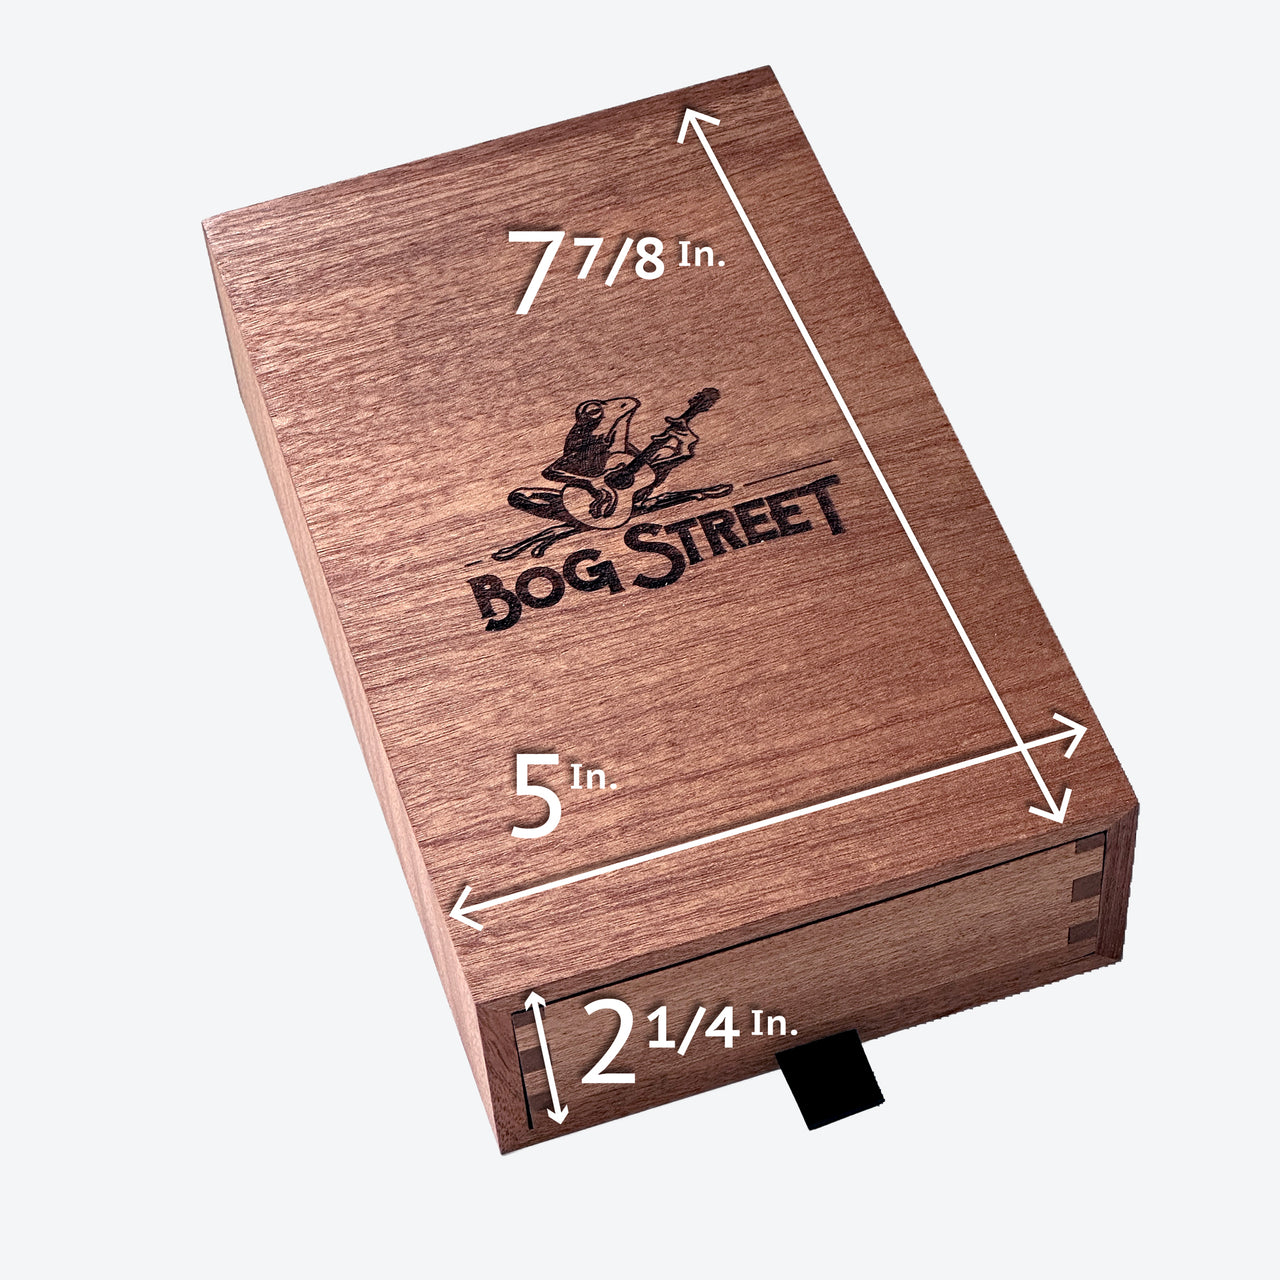 Ultimate Bog Street Gift Set (Limited Quantity)